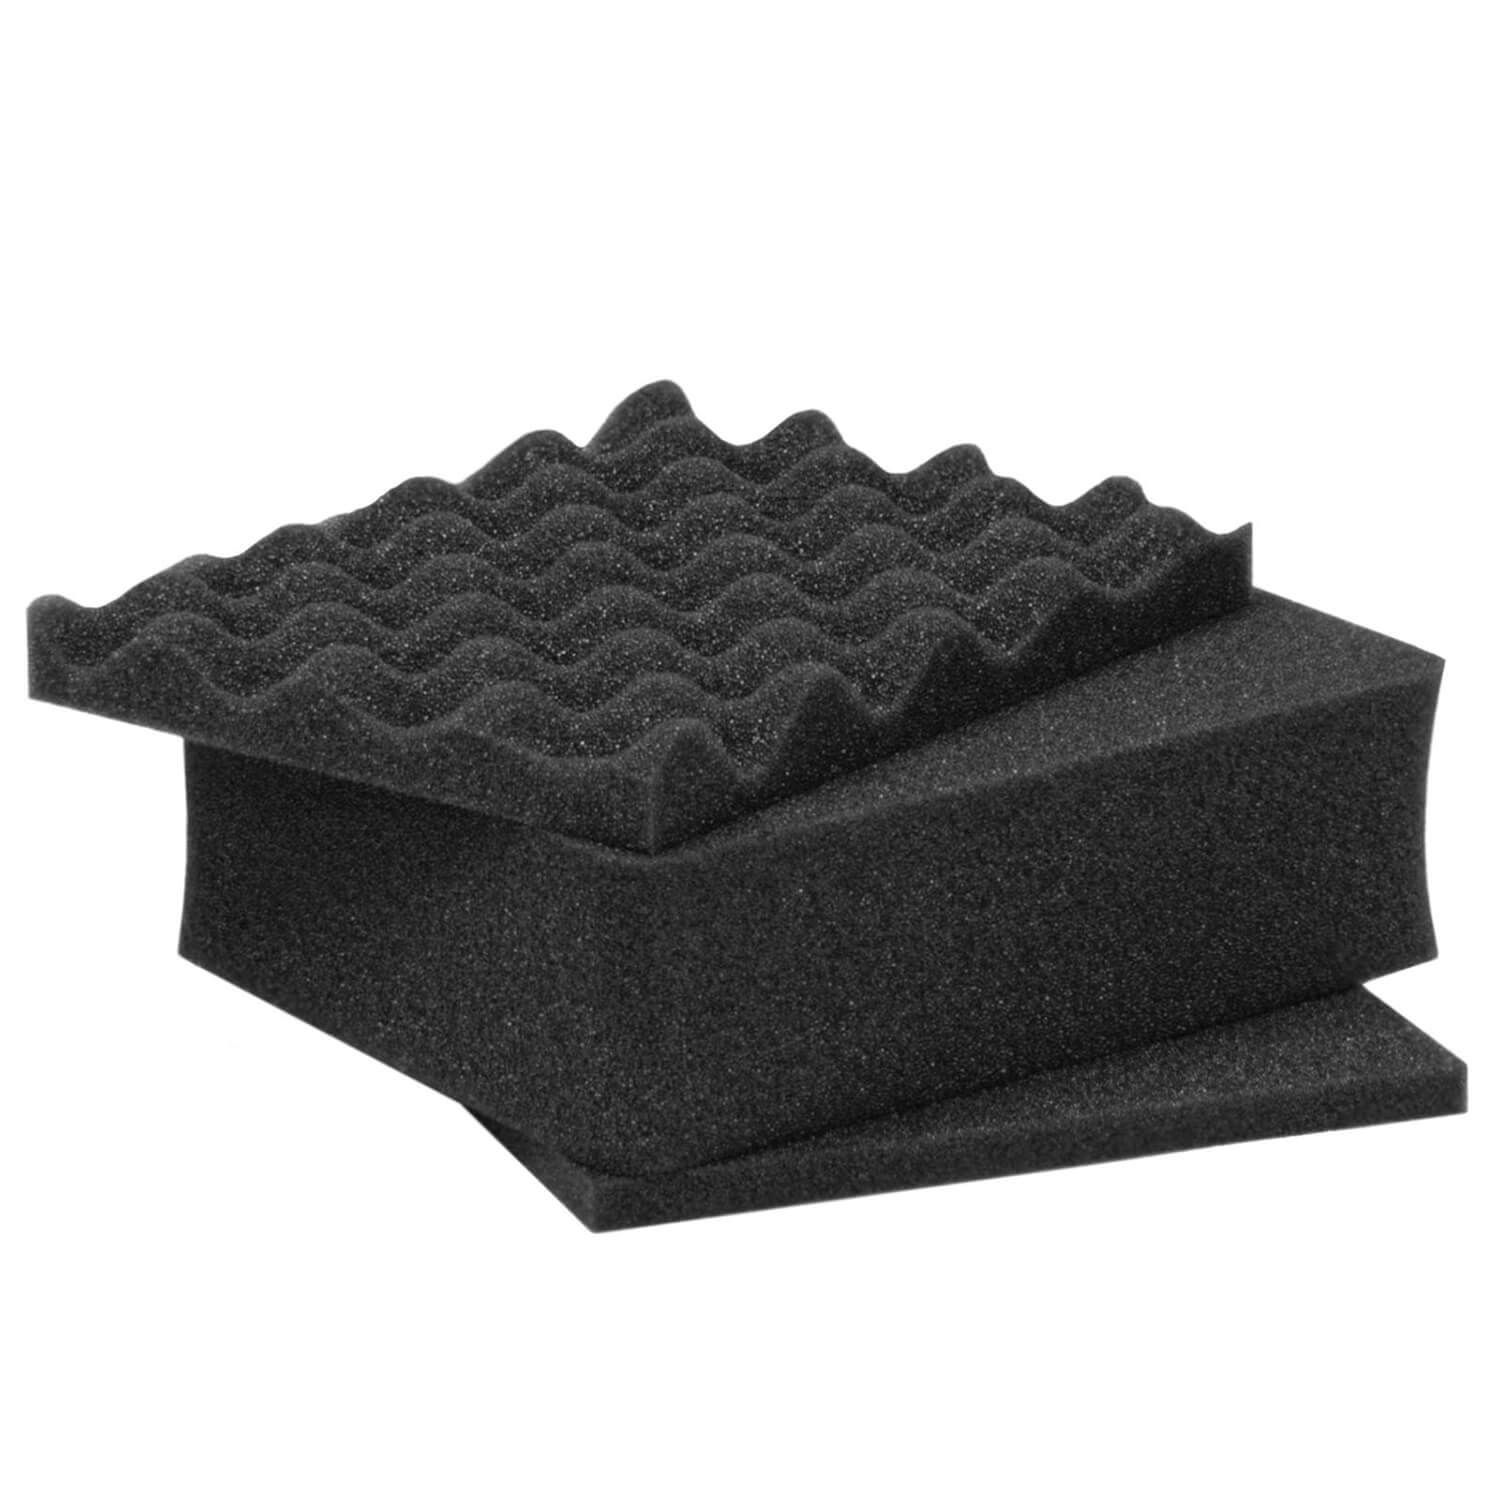 nanuk 904 waterproof hard case with foam insert graphite